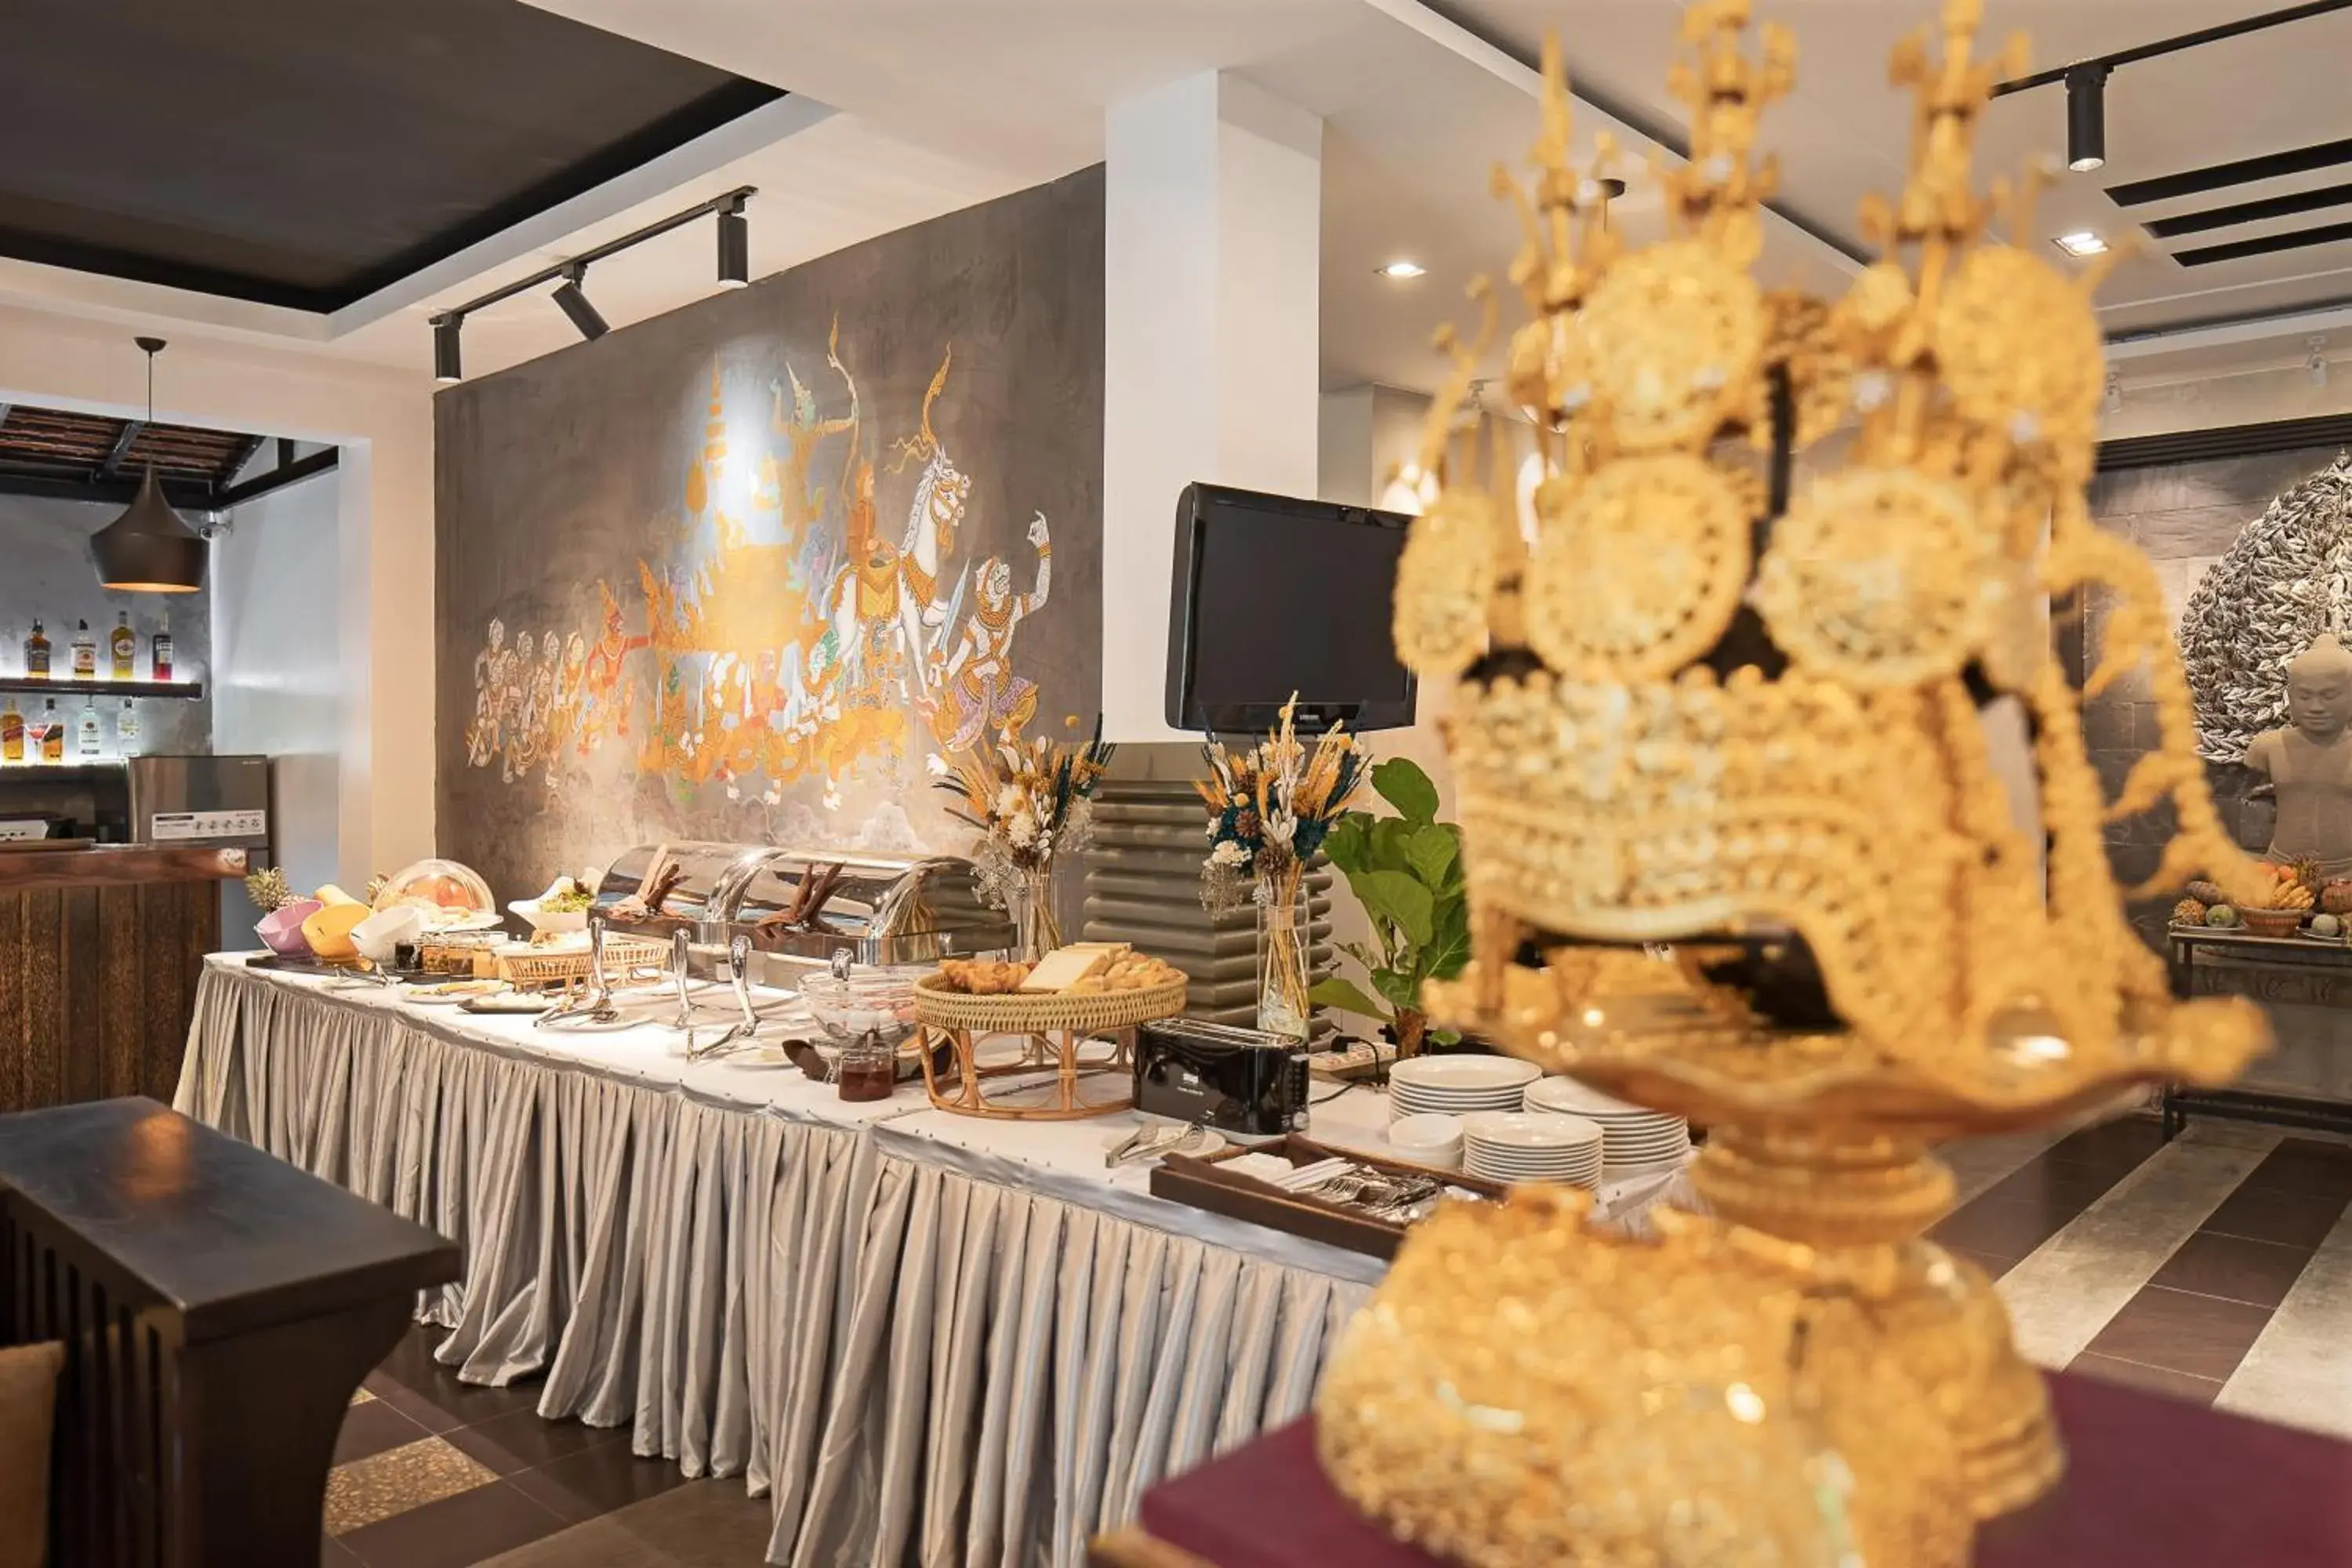 Buffet breakfast in Apsor Palace Hotel